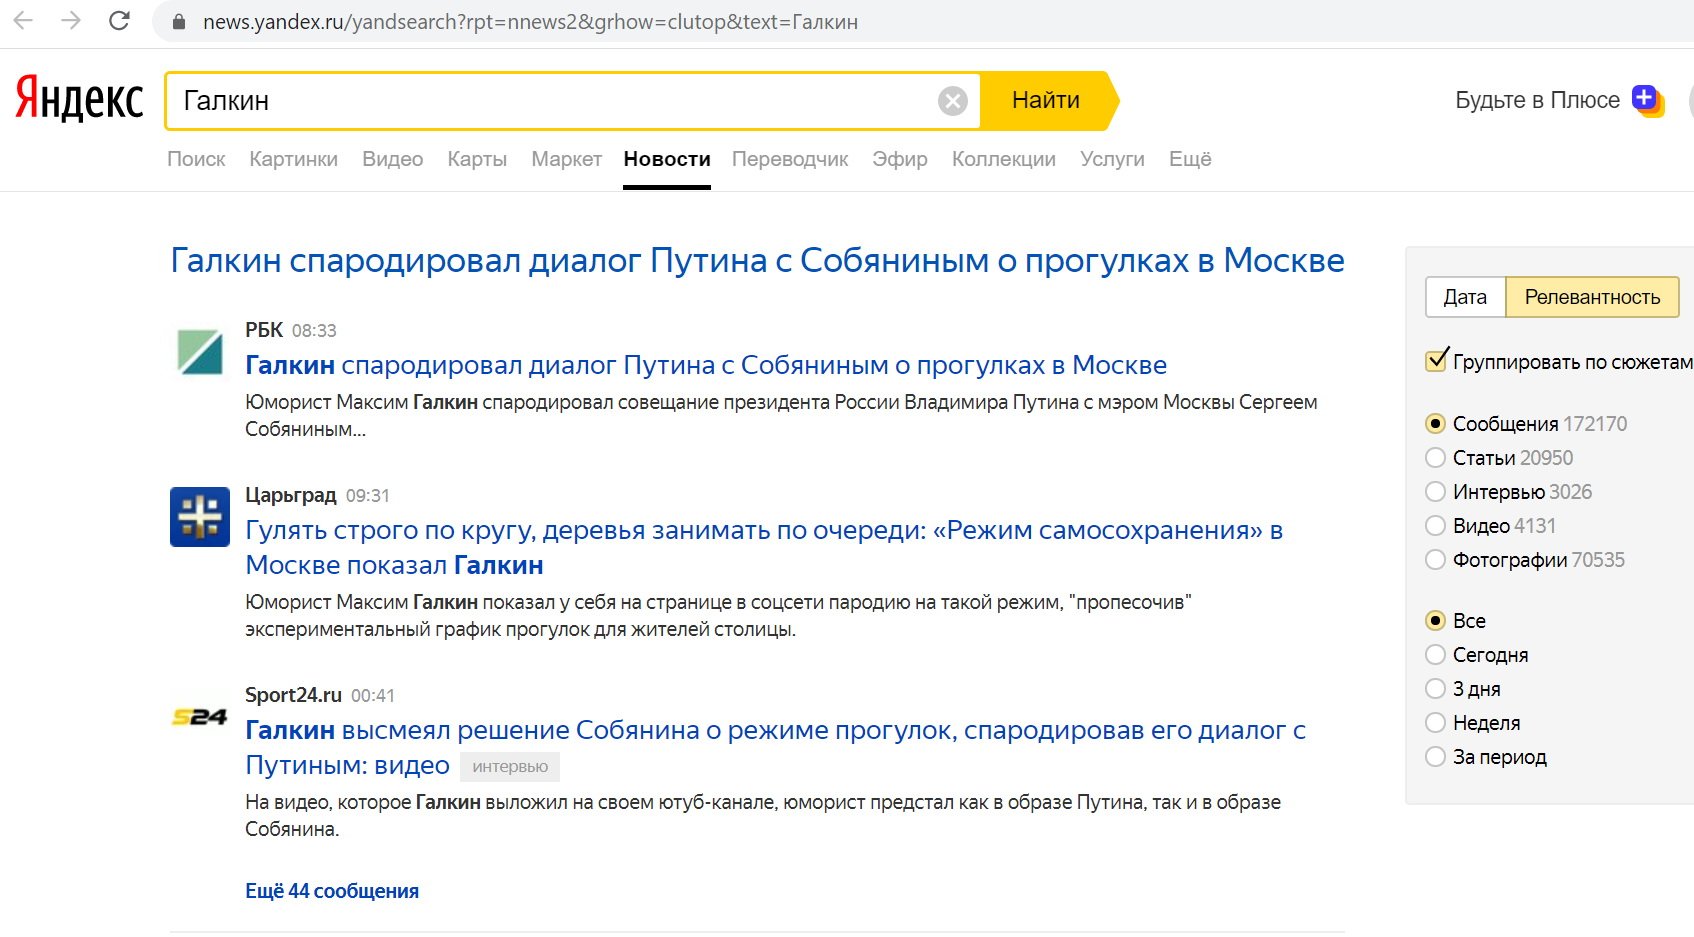 Сюжет Яндекса о пародии Галкина на Путина и Собянина